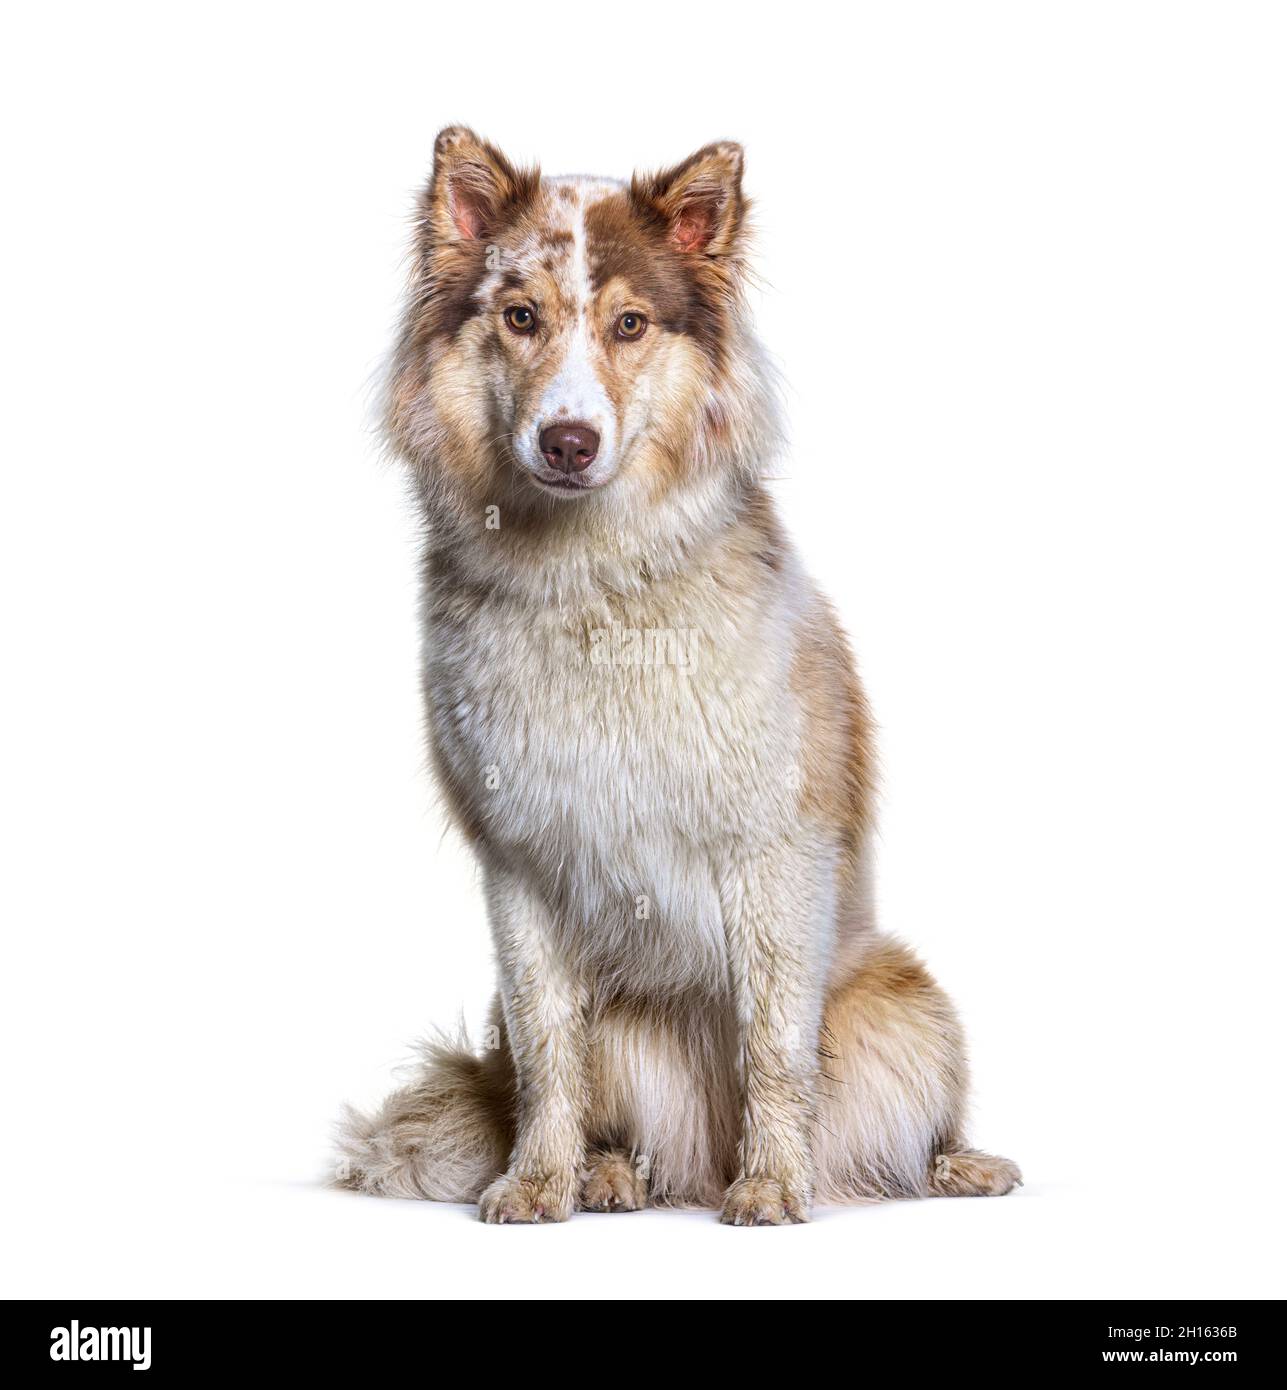 Can A Australian Terrier And A Alaskan Husky Be Friends